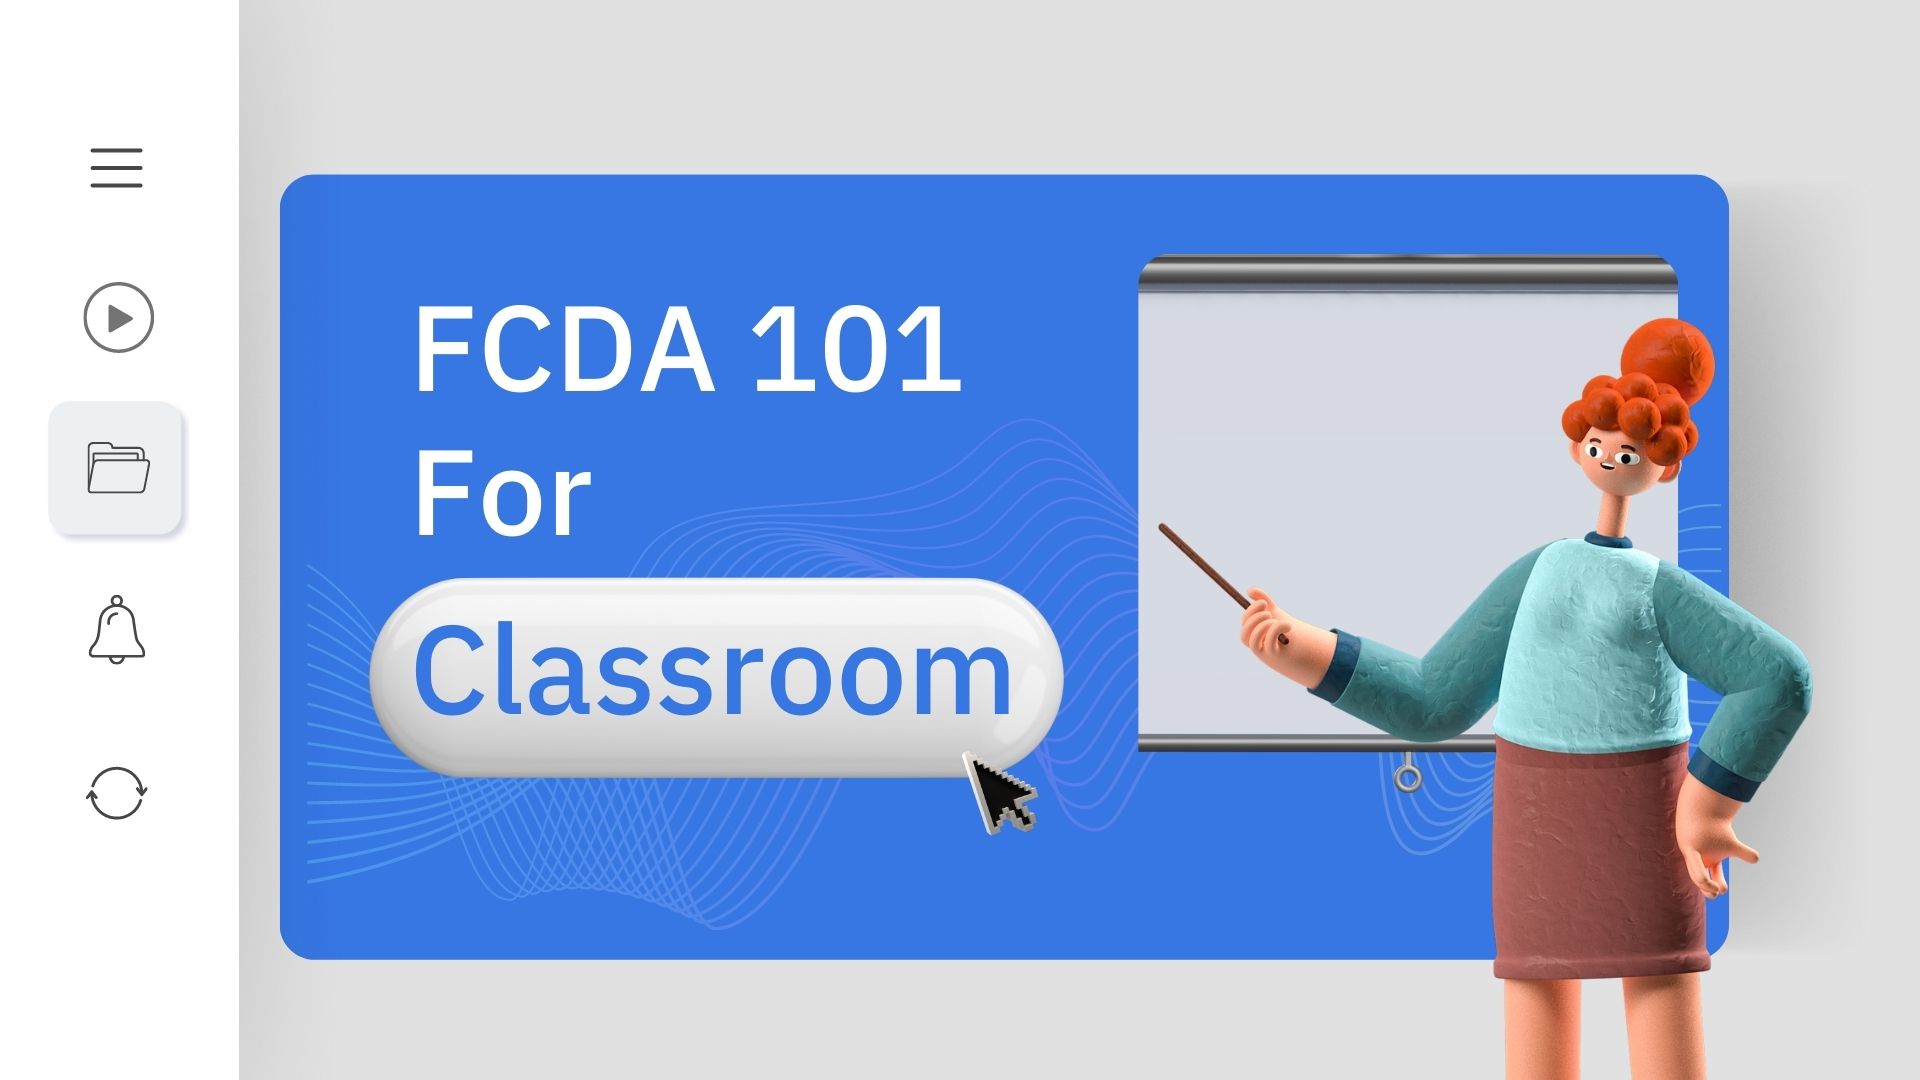 FCDA 101 For Classroom